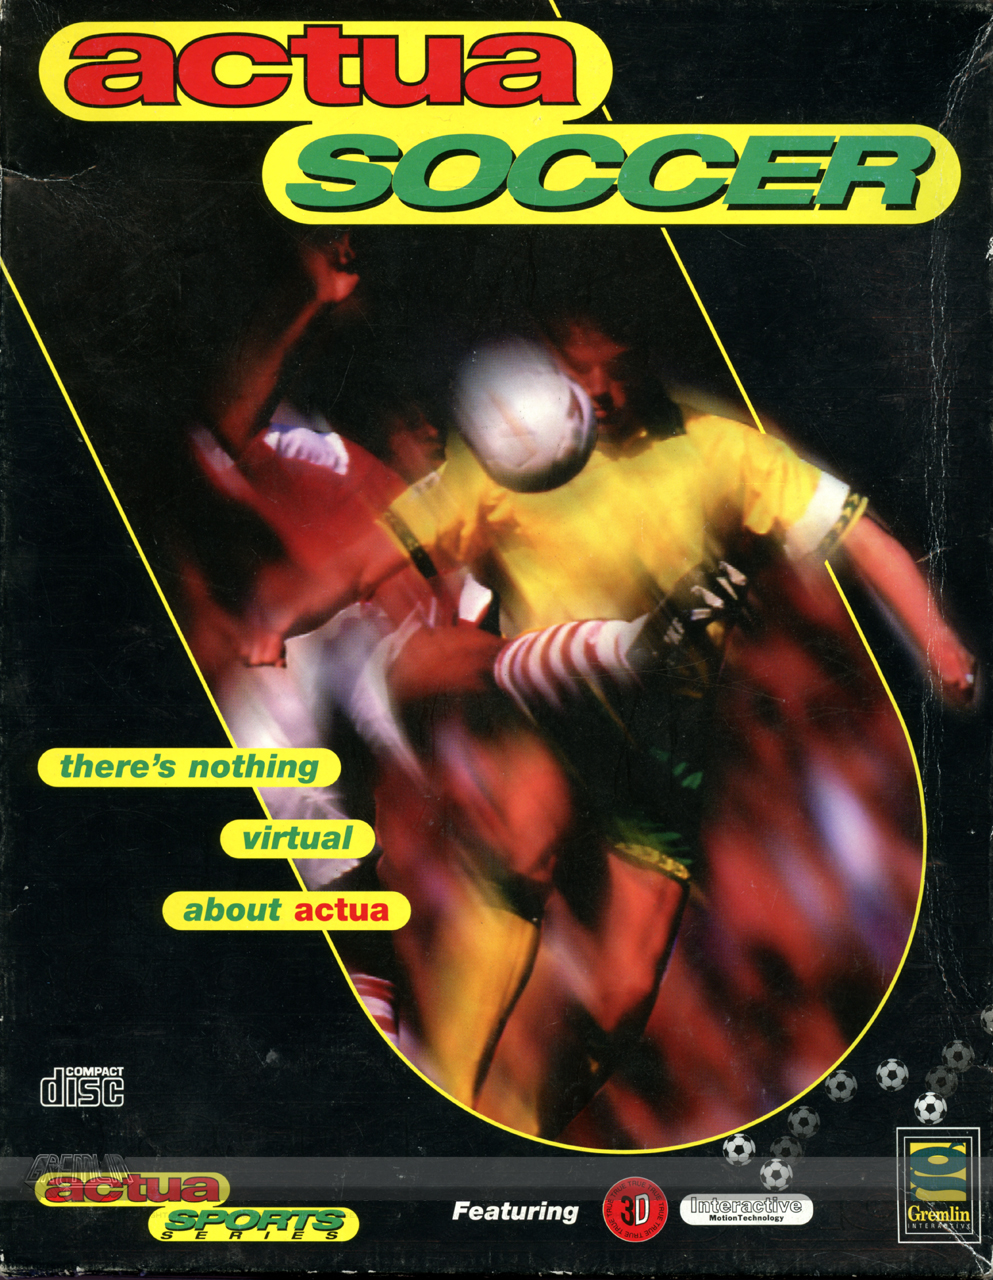 Actua Soccer – “Final” Theme